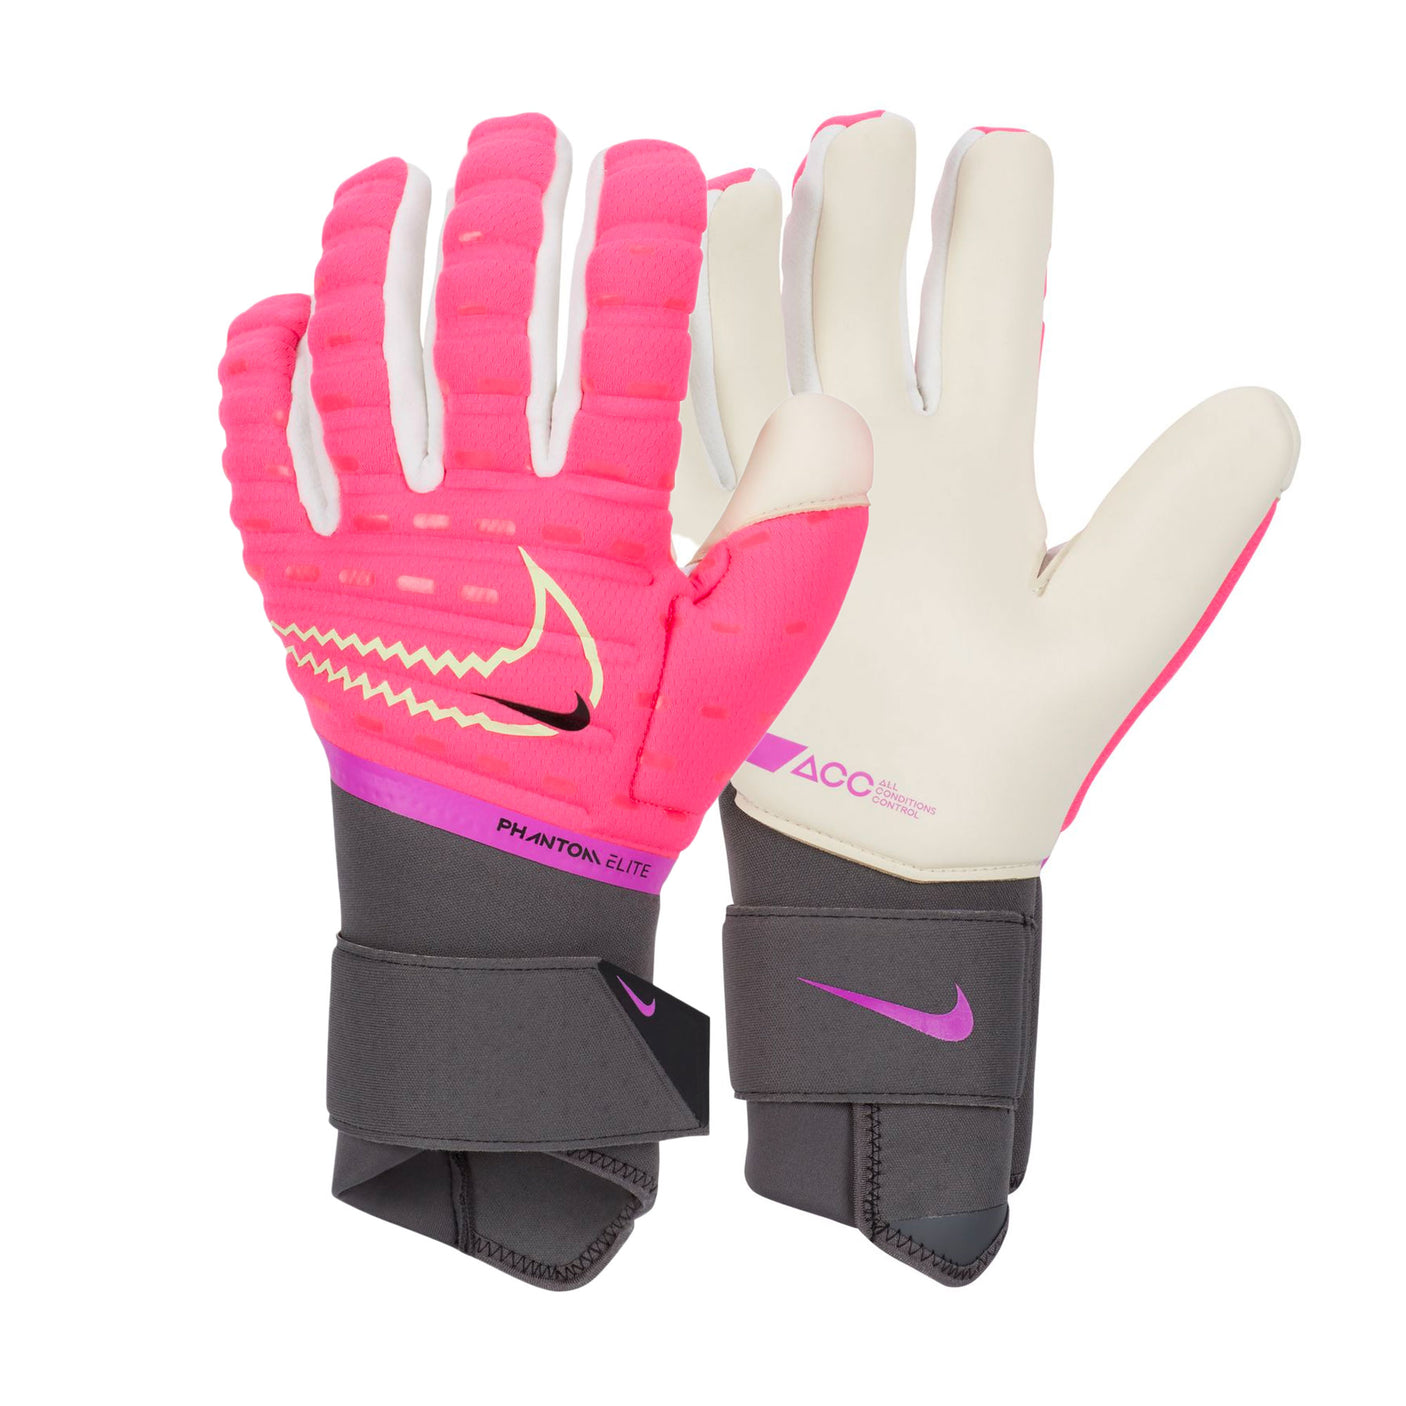 Nike Men's Phantom Elite Goalkeeper Gloves Hyper Pink/Volt Both